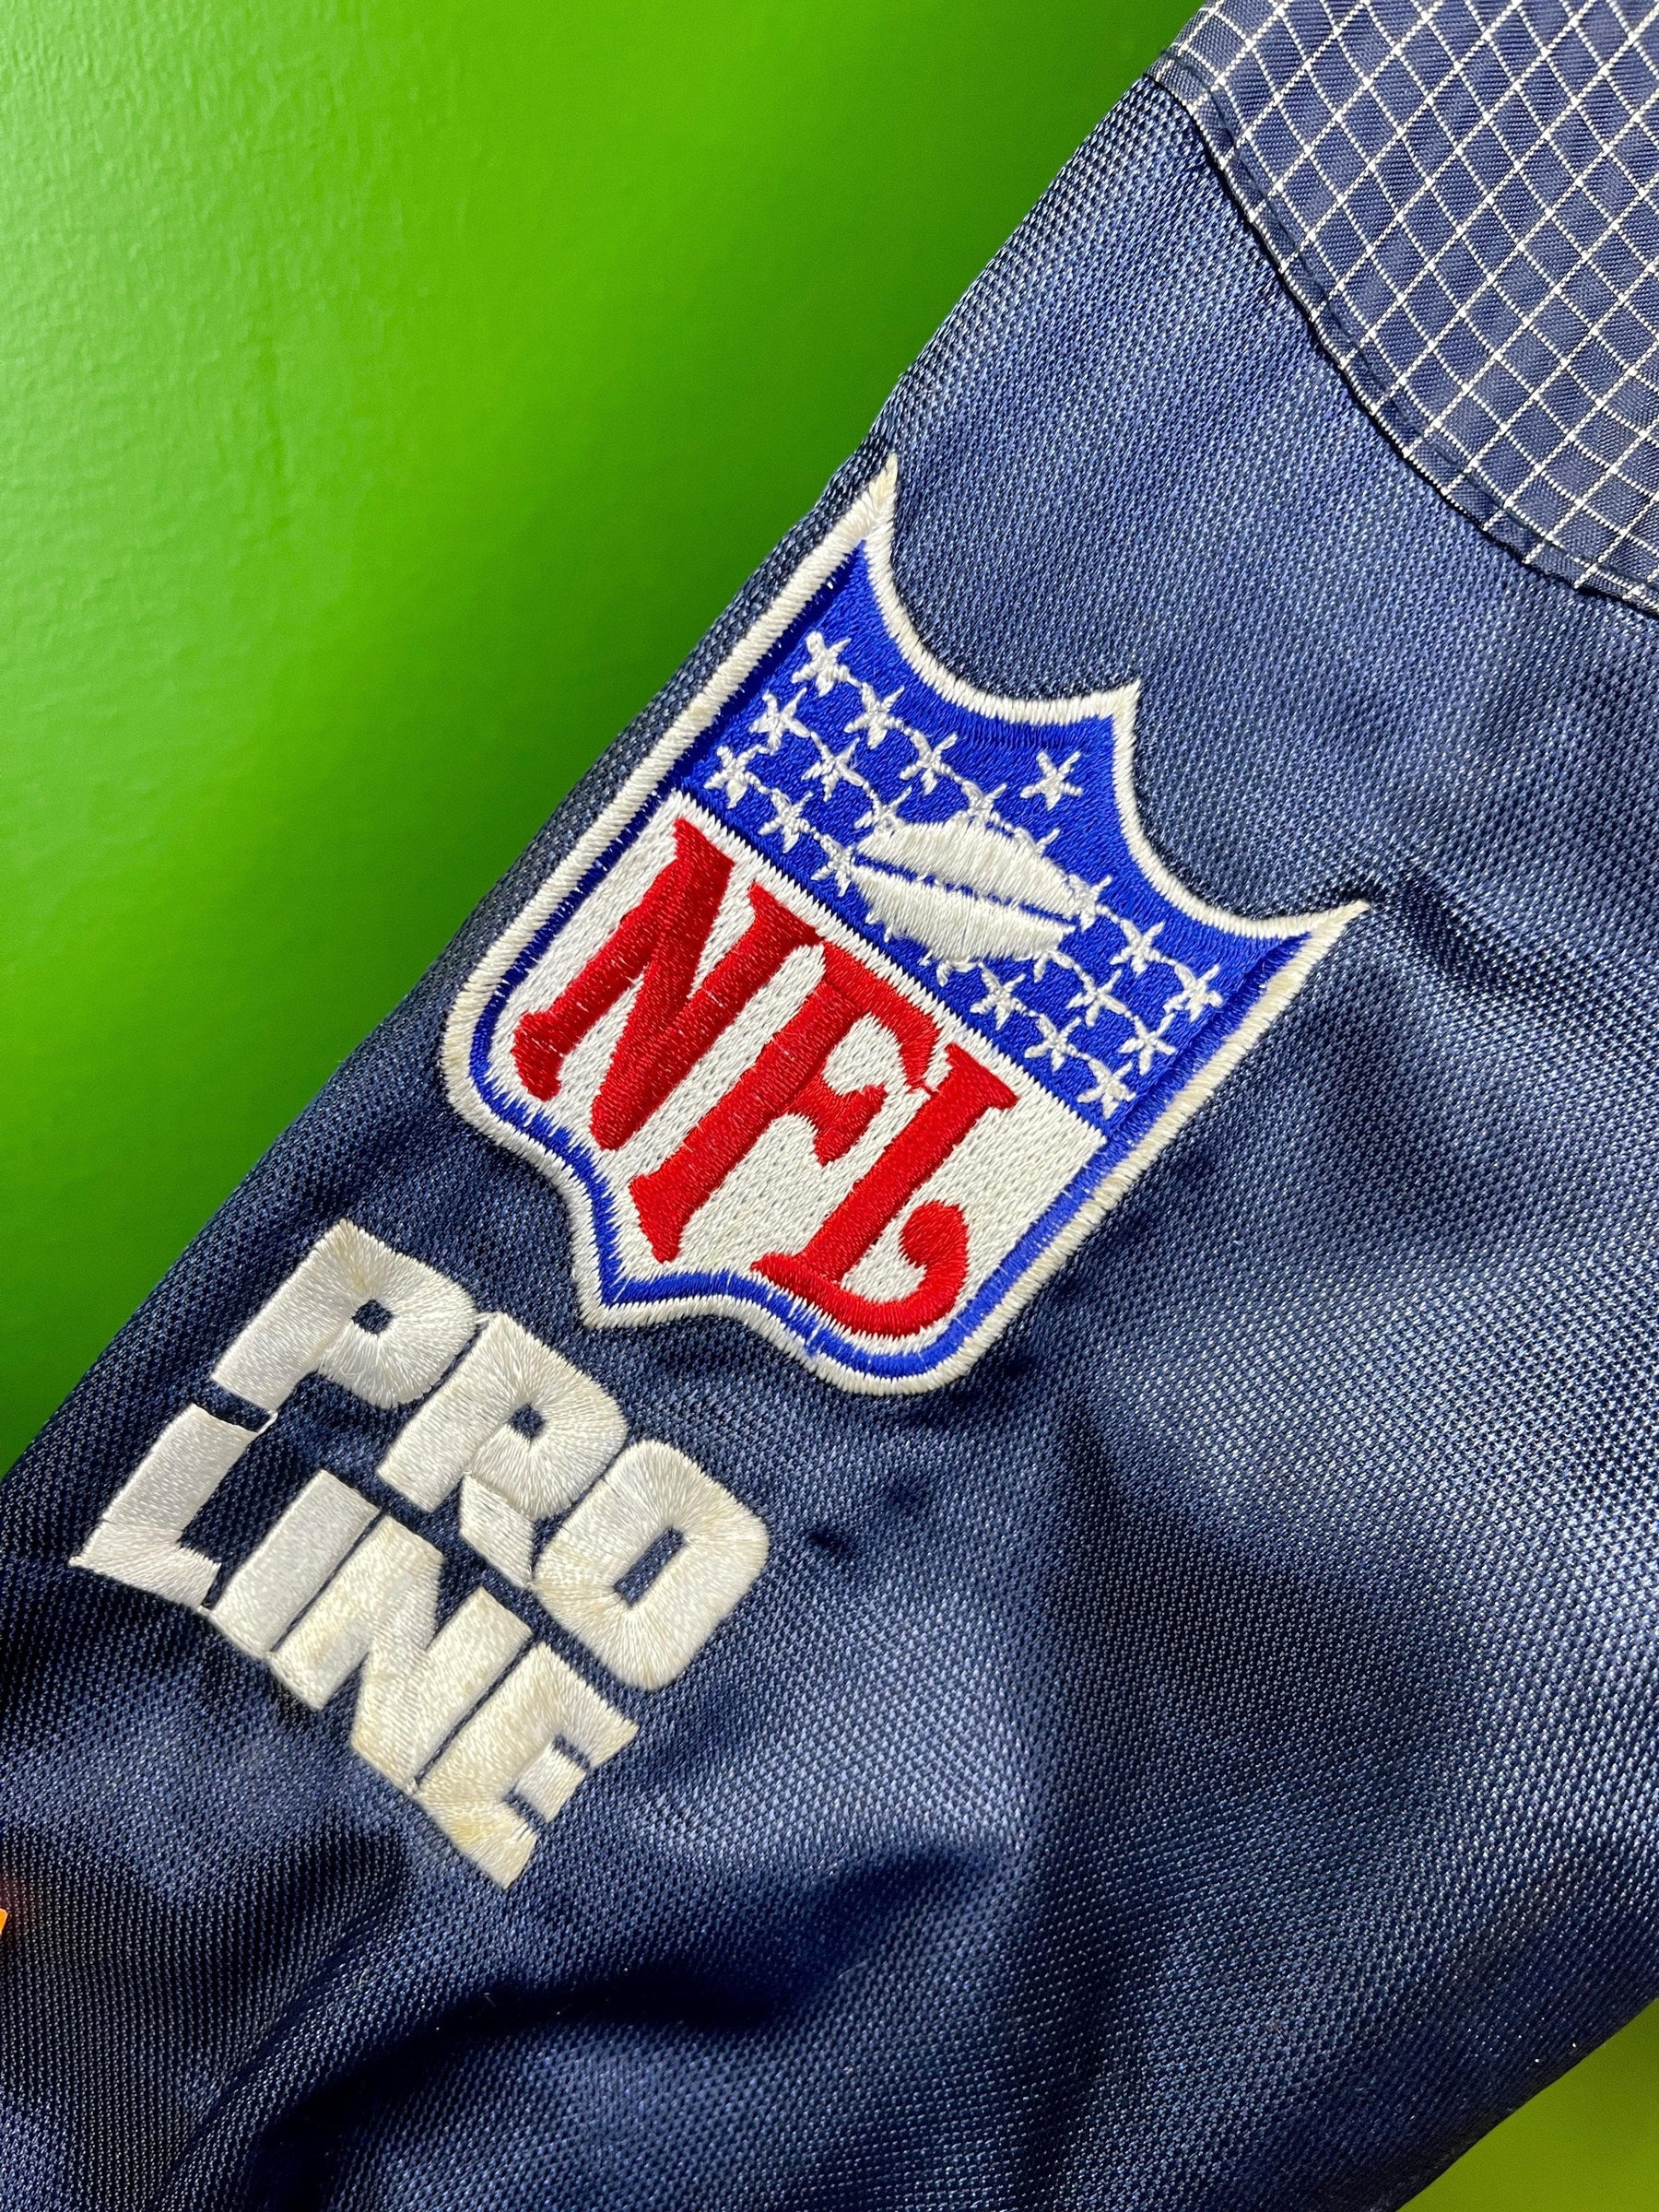 NFL Denver Broncos Logo Athletic Pro Line Windbreaker Jacket Men's Large